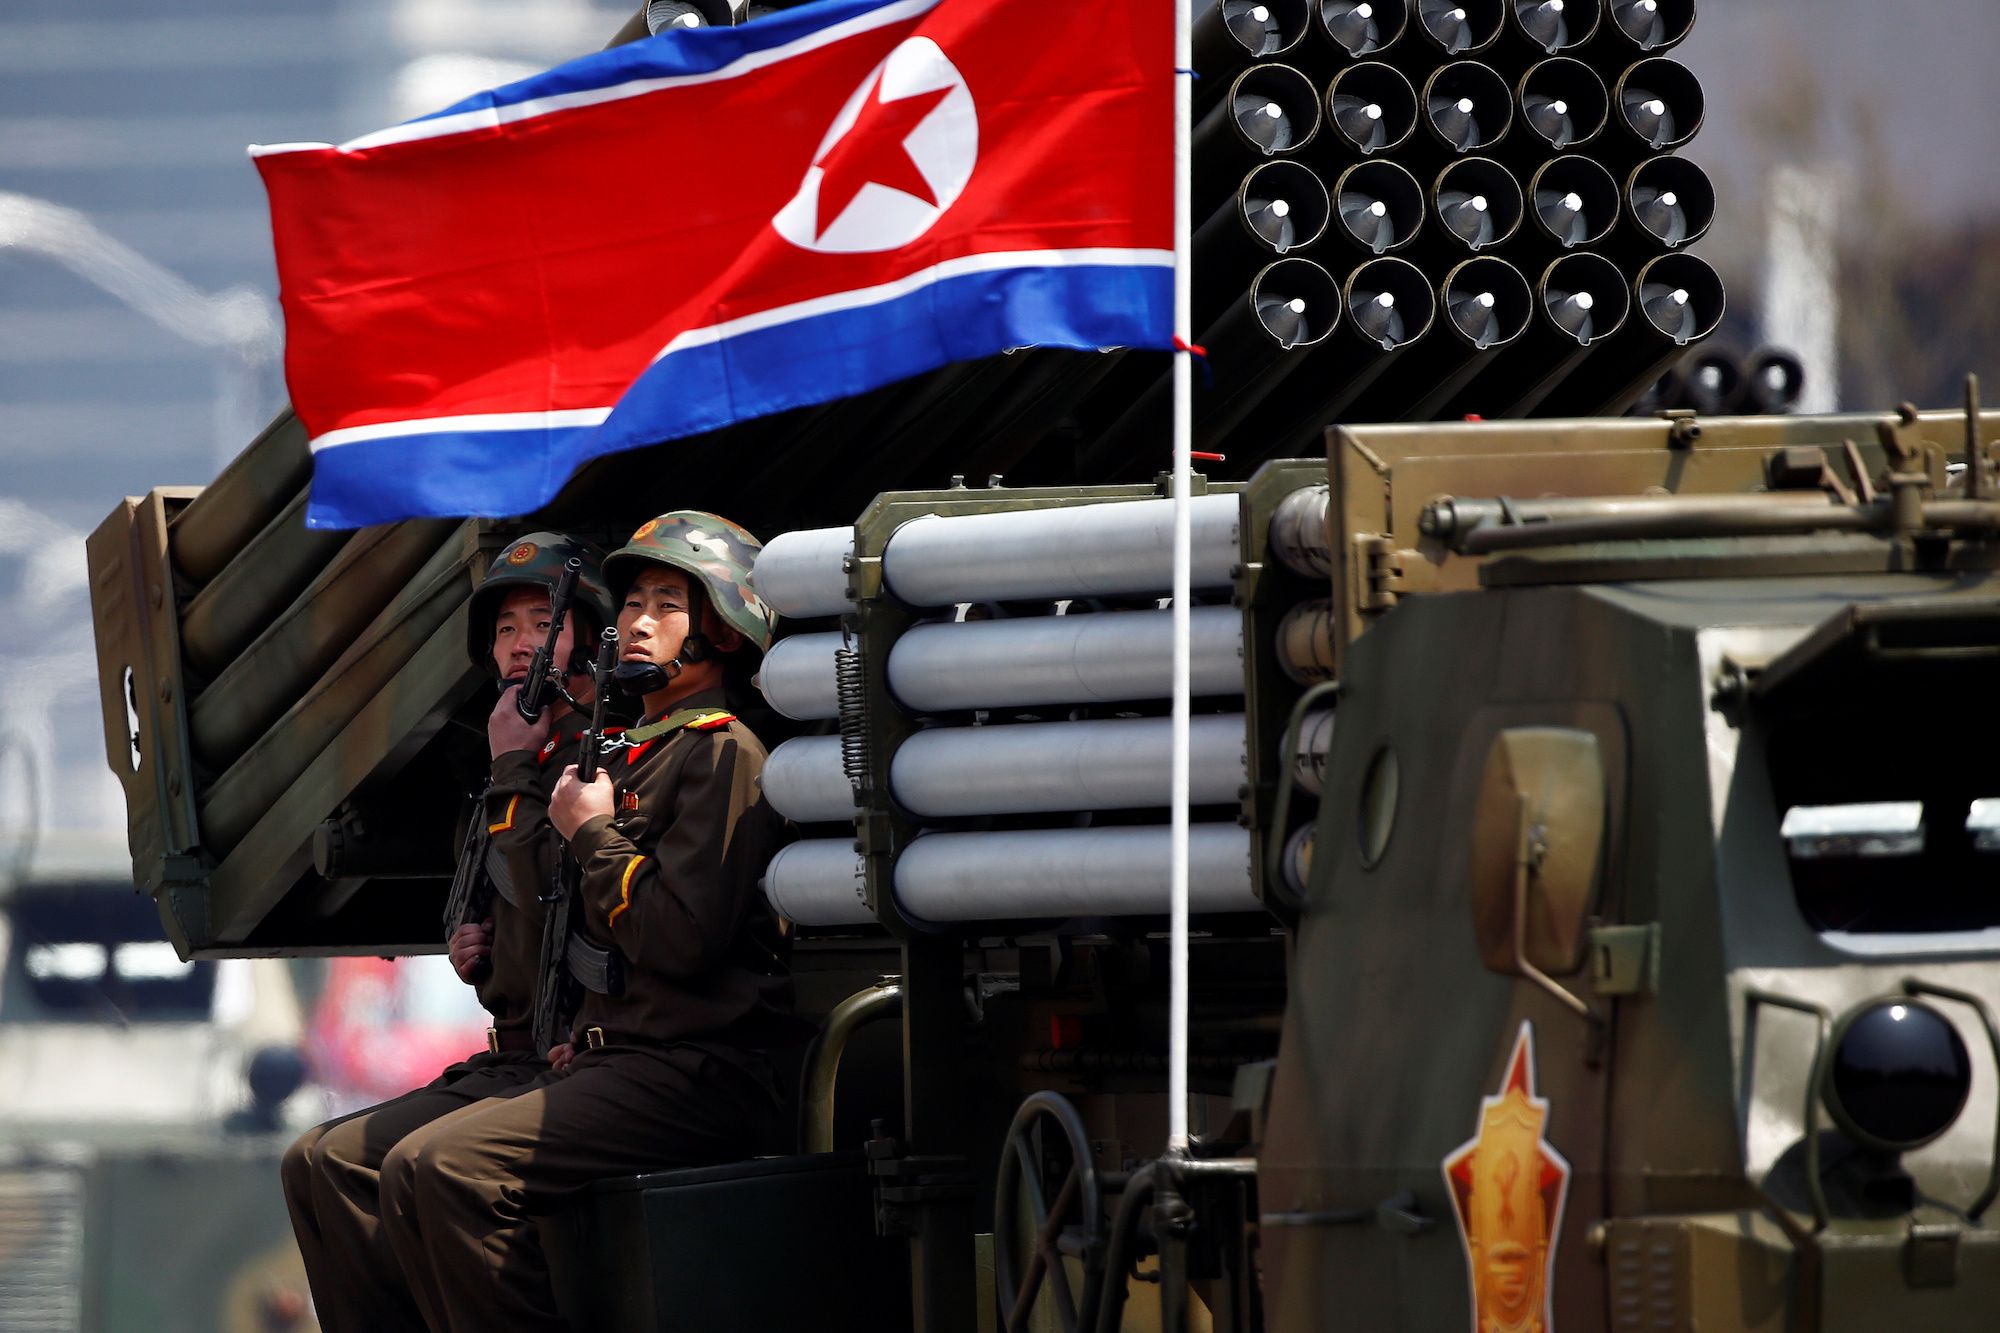 Des soldats nord-coréens lors d'une parade militaire à Pyongyang le 15 avril 2017. (Source : CNN)